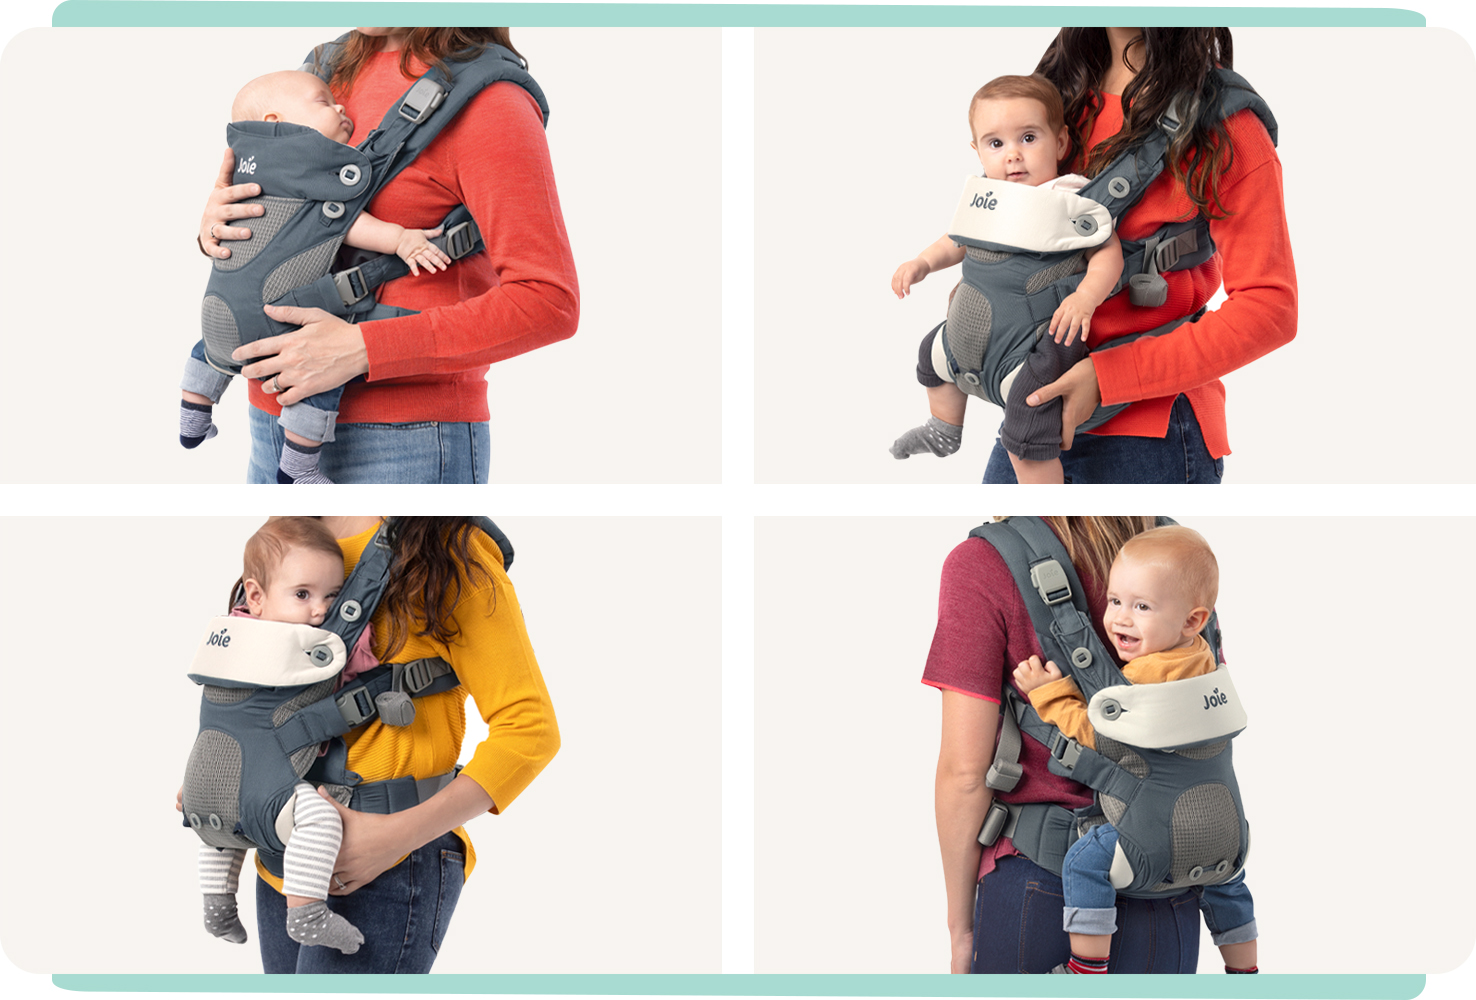   4 imágenes de mamás llevando a sus bebés en un portabebés azul Joie Savvy 4in1. Arriba a la izquierda: modo para bebés pequeños. Abajo a la izquierda: modo orientado a los padres. Arriba a la derecha: modo orientado hacia fuera. Abajo a la derecha: modo